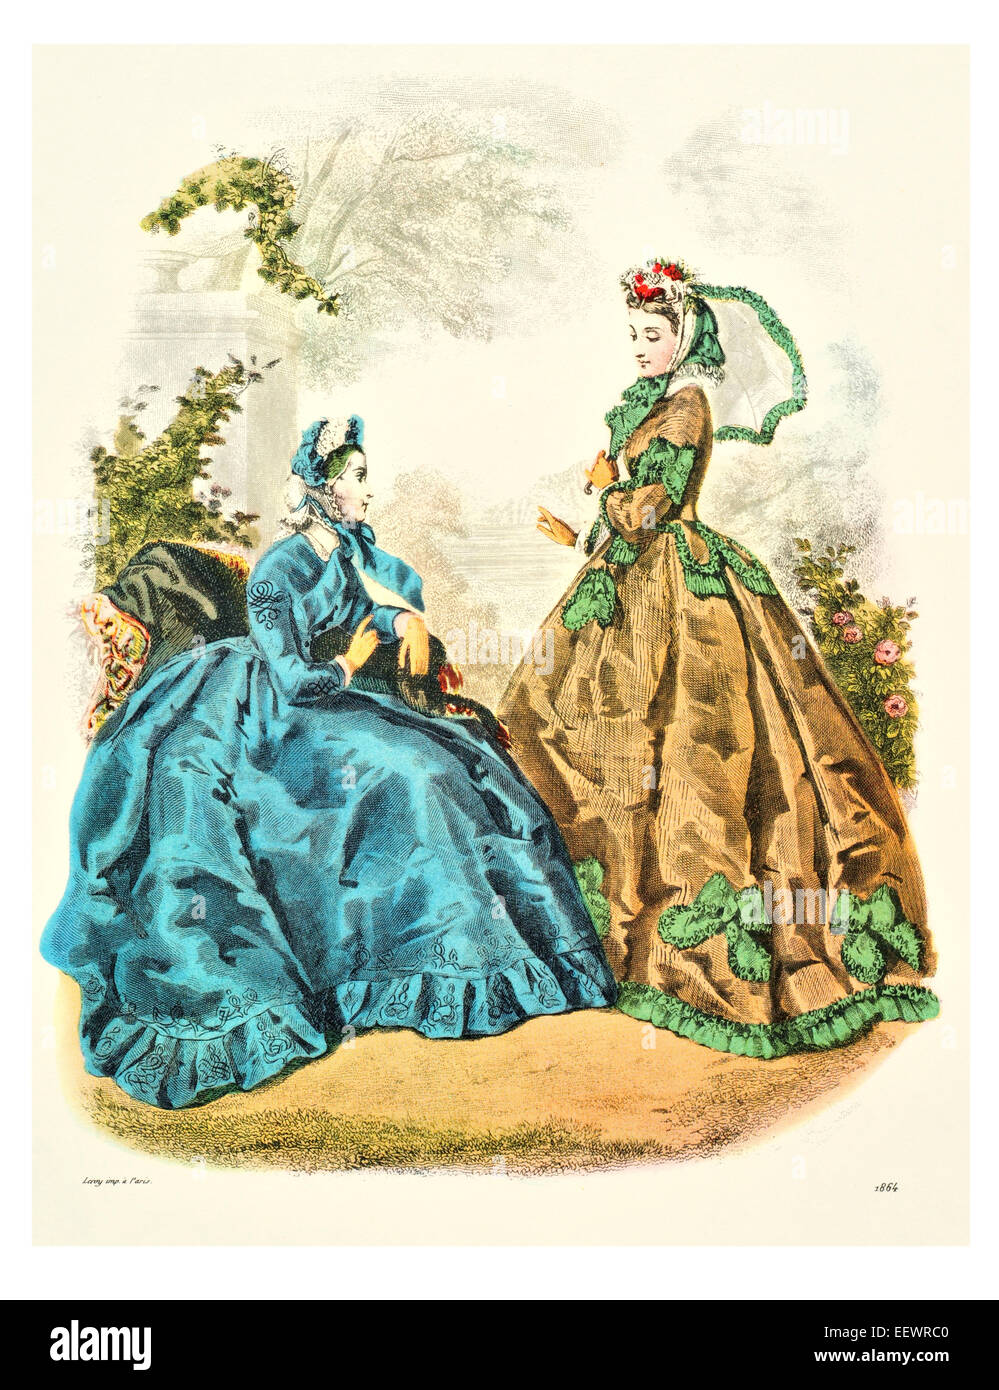 La Mode Illustree 1864 trajes de época victoriana moda vestido vestidos vestido falda velo cuff lujos tapa muselina bordado Foto de stock